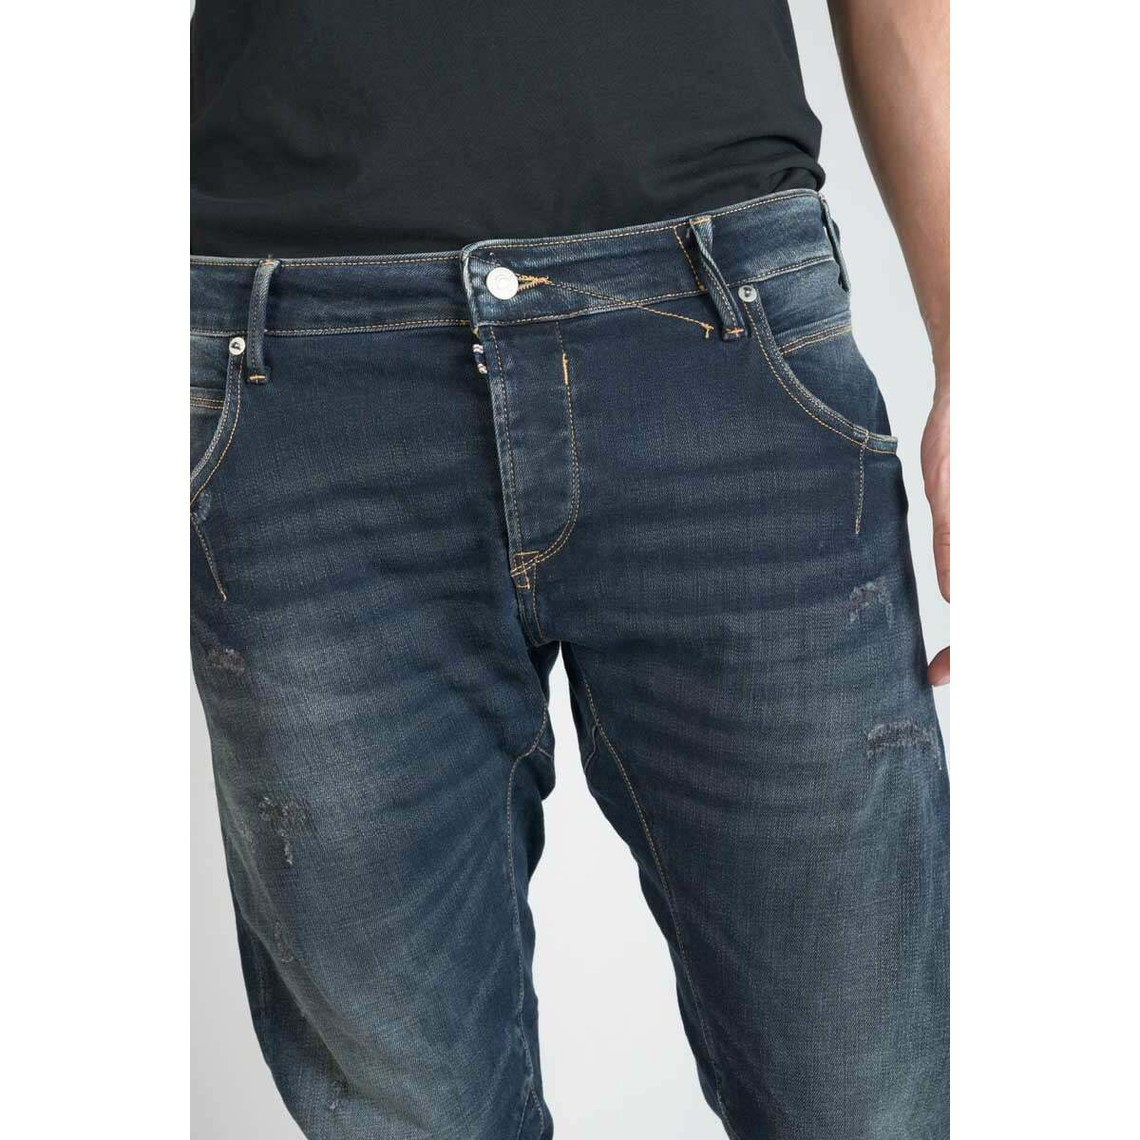 Jeans tapered 903, longueur 34 bleu en coton Owen